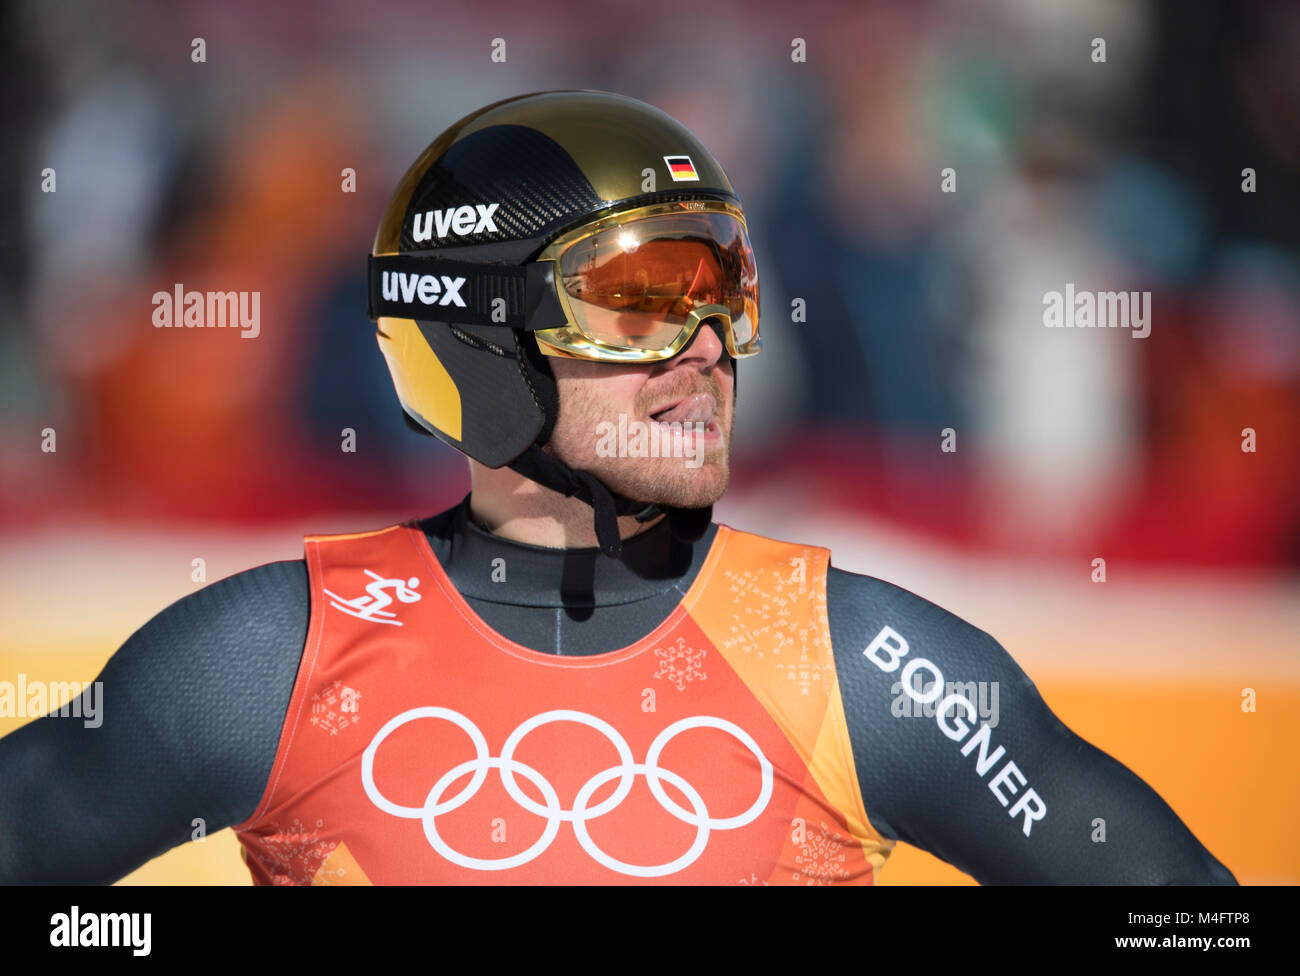 Andreas SANDER, Germany, 8. Platz, Men's Super-G, Super G der Maenner,  am 16.02.2018 Olympische Winterspiele 2018, vom 09.02. - 25.02.2018 in PyeongChang/ Suedkorea. |usage worldwide Stock Photo